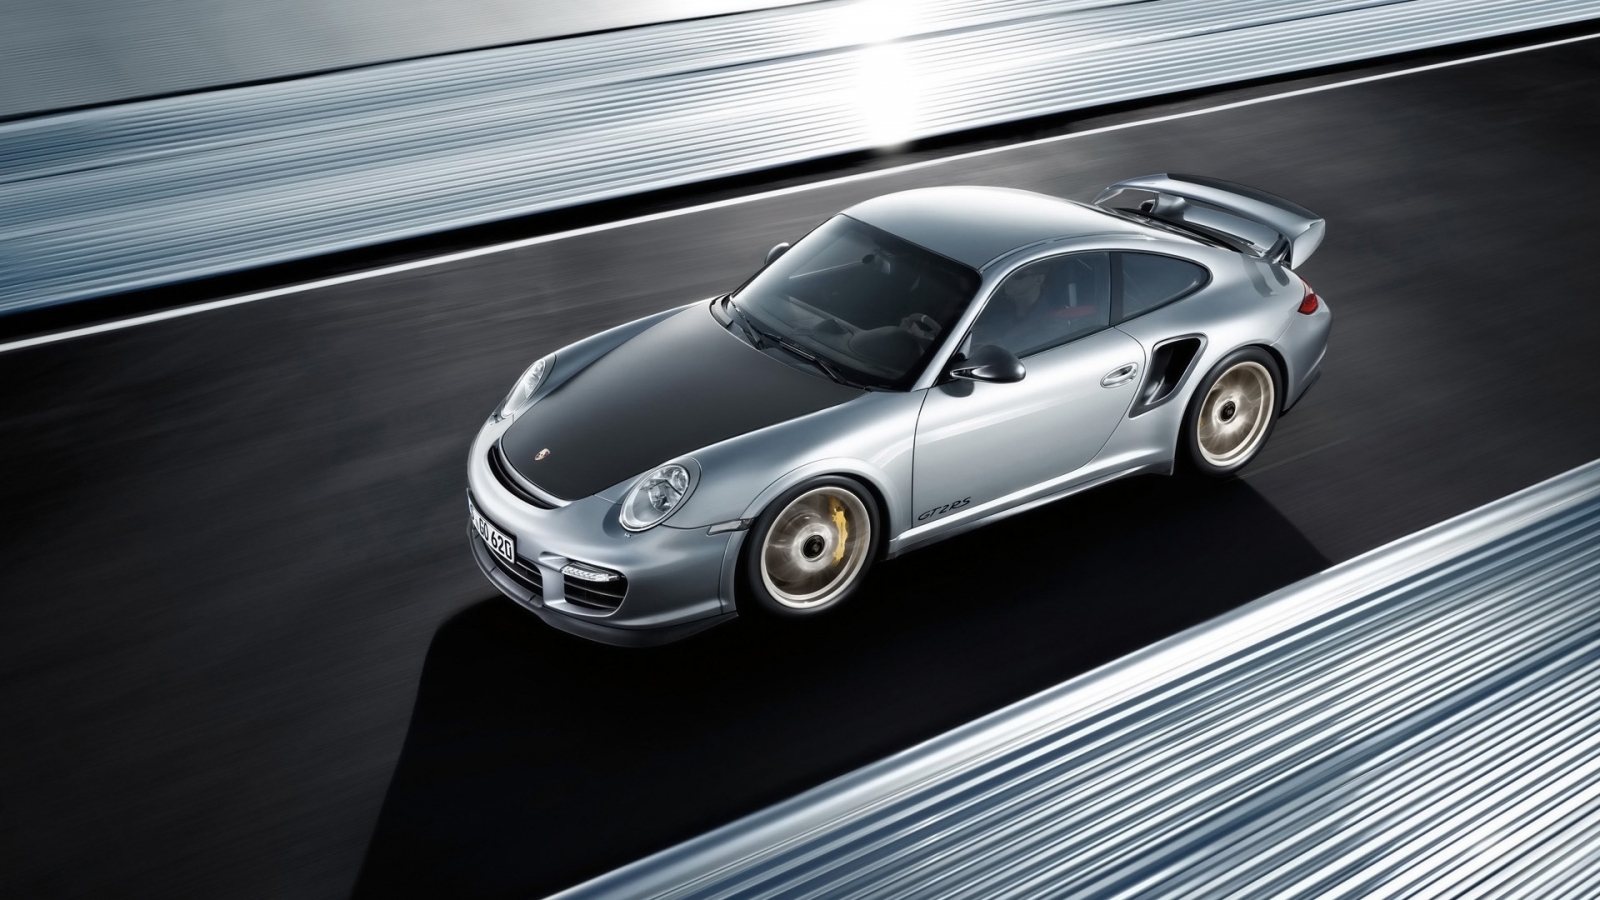 Porsche 911 GT2 RS 2011 for 1600 x 900 HDTV resolution